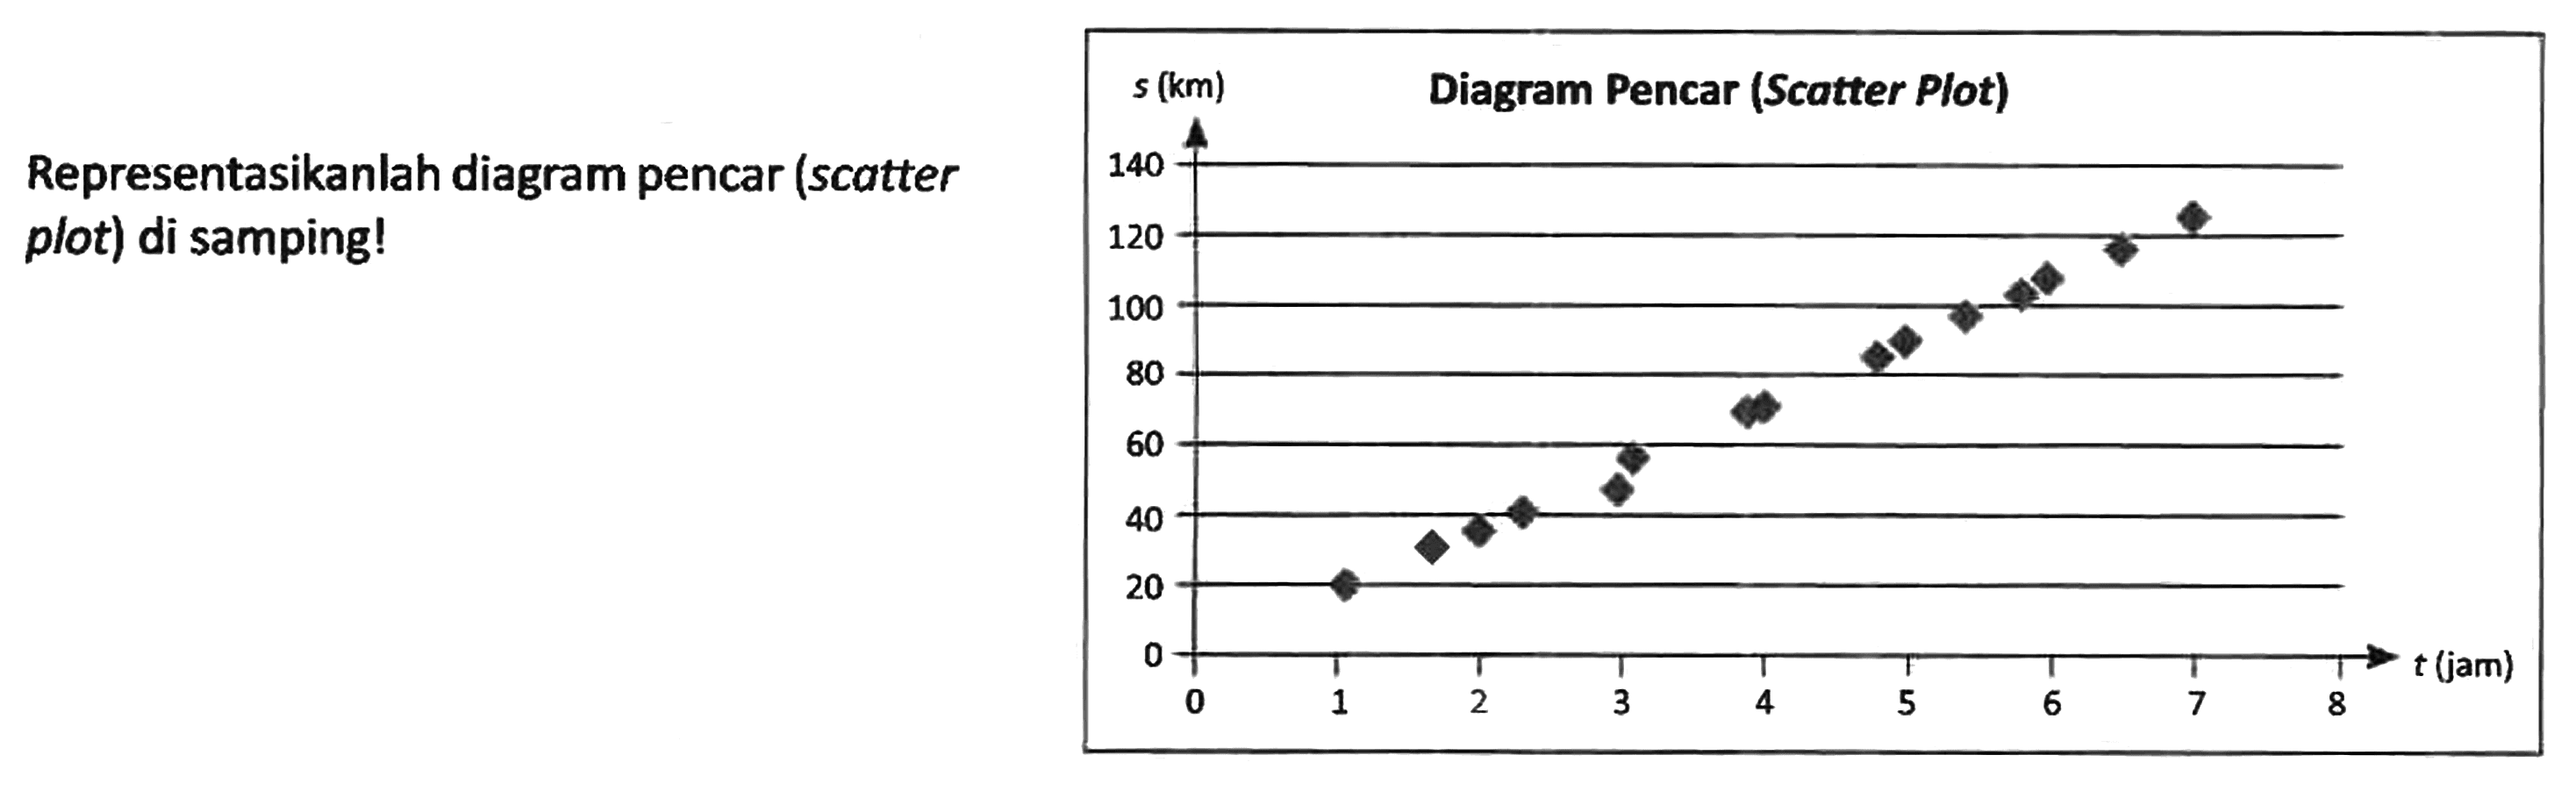 Representasikanlah diagram pencar (scatter plot) di samping!
Diagram Pencar (Scatter Plot) 
s (km) 140 120 100 80 60 40 20 0 0 1 2 3 4 5 6 7 8 t (jam) 